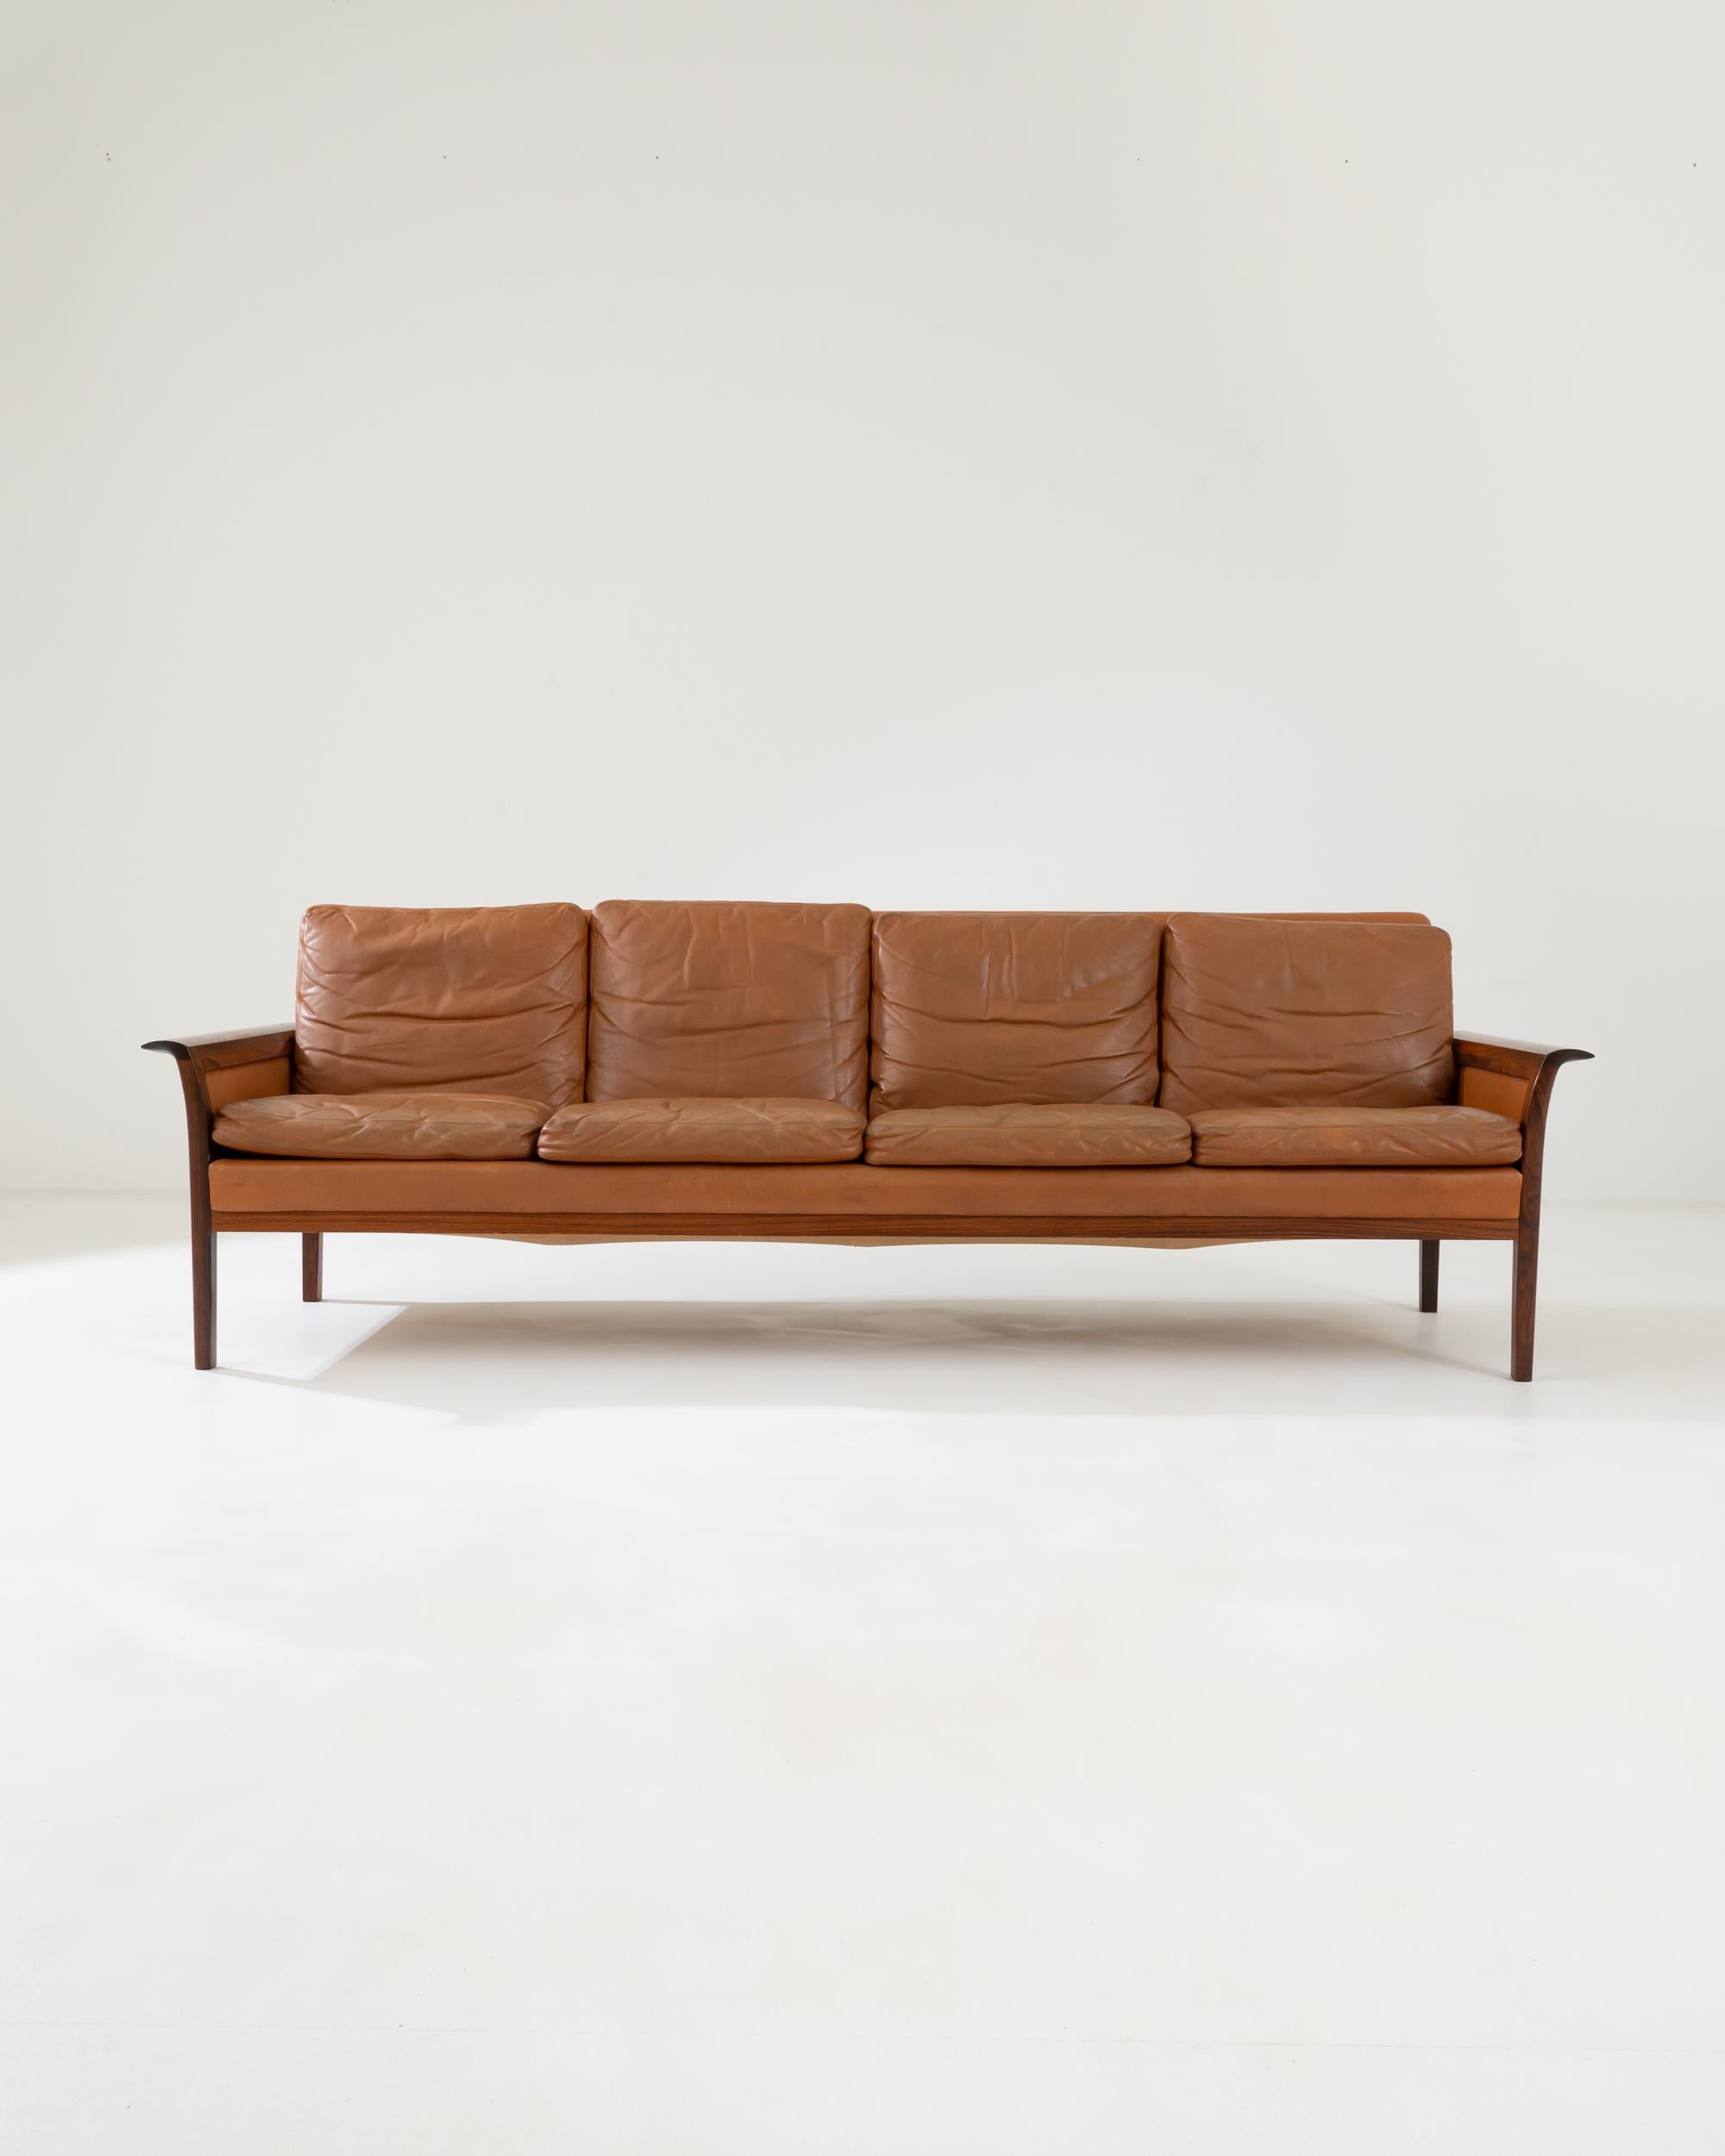 Canapé en cuir à quatre places créé dans les années 1960 au Danemark par Hans Olsen. Ce canapé à la fois élégant et accueillant s'étire et offre un vaste espace pour quatre personnes. Créé par le designer de meubles expérimental Hans Olsen, ce